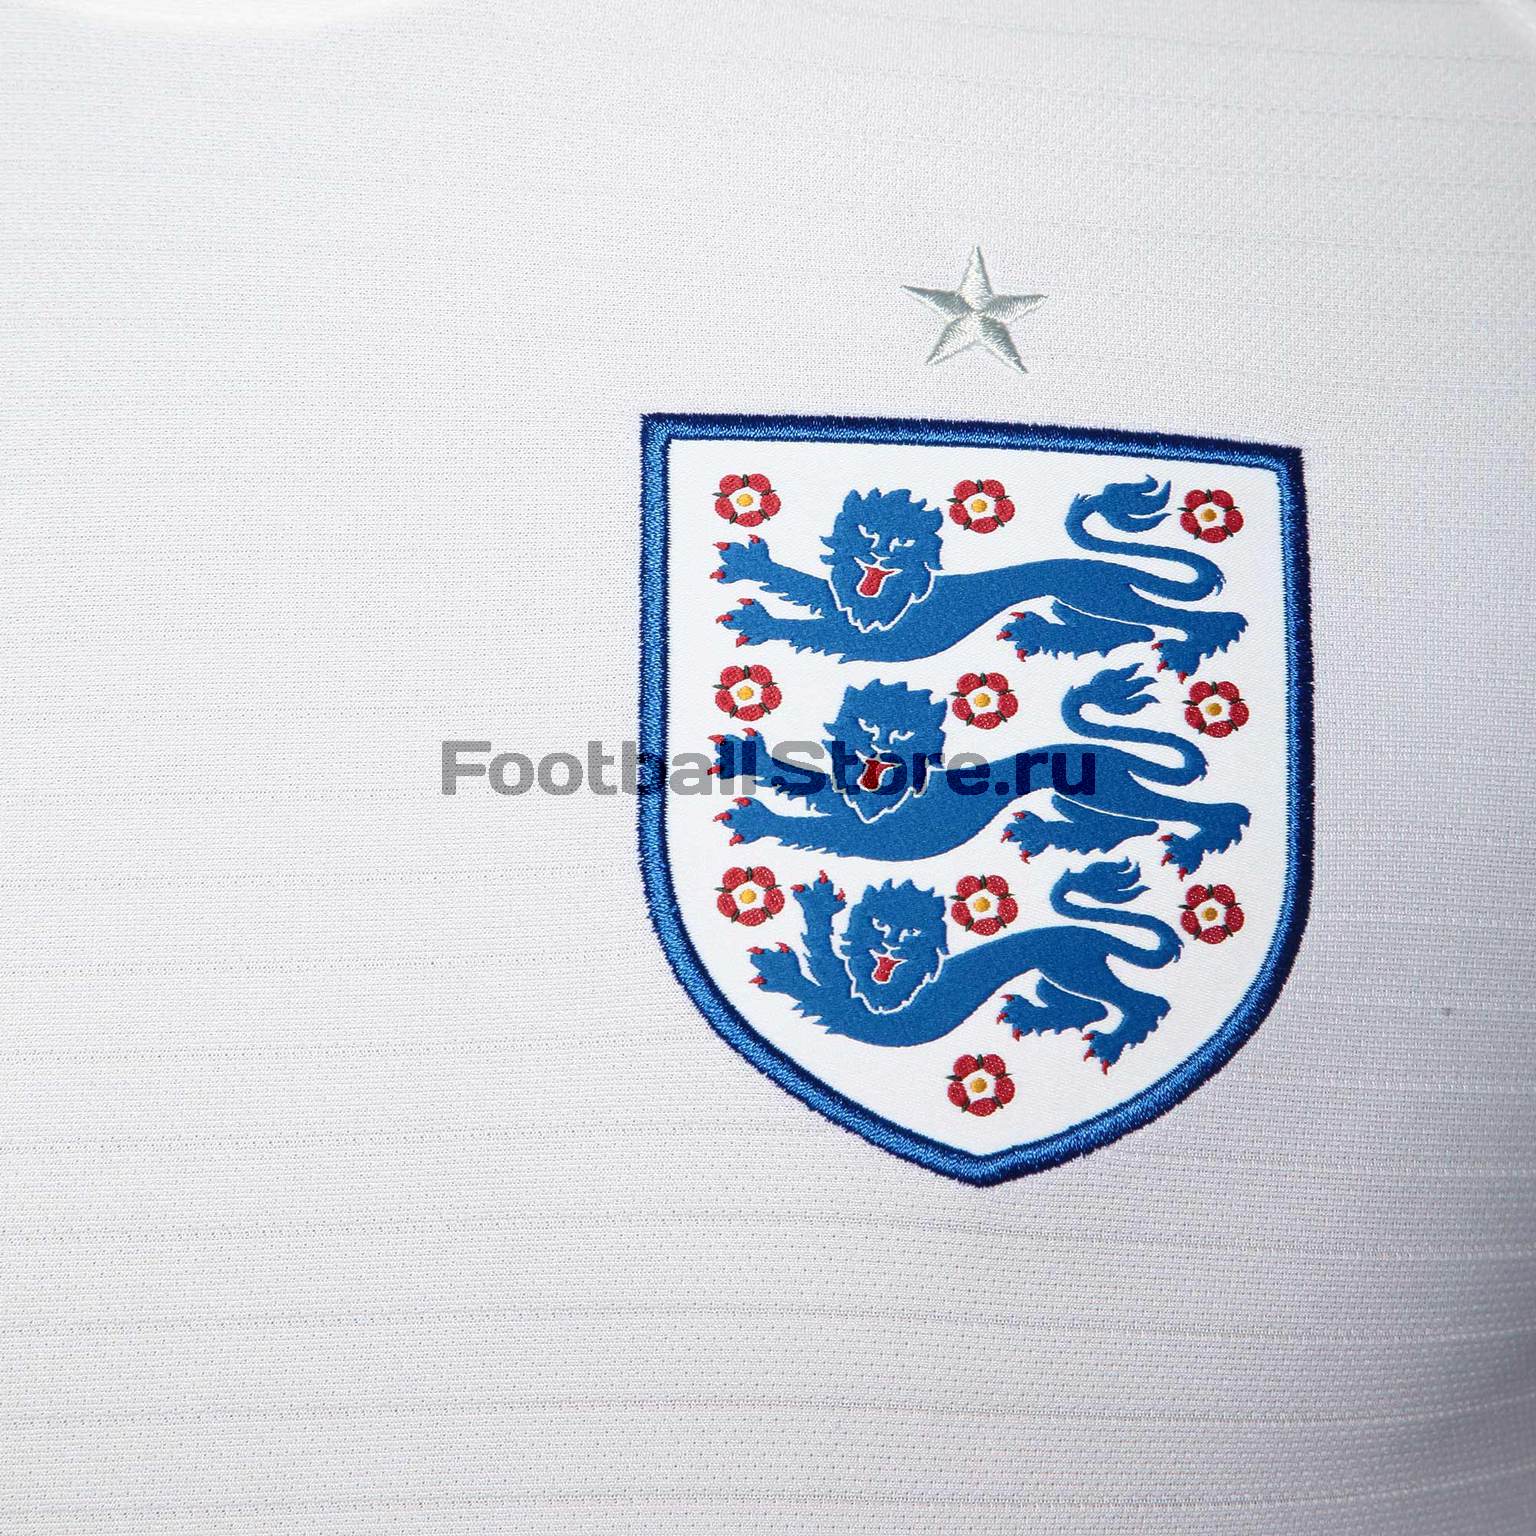 Футболка игровая домашняя Nike сборной Англии 893868-100